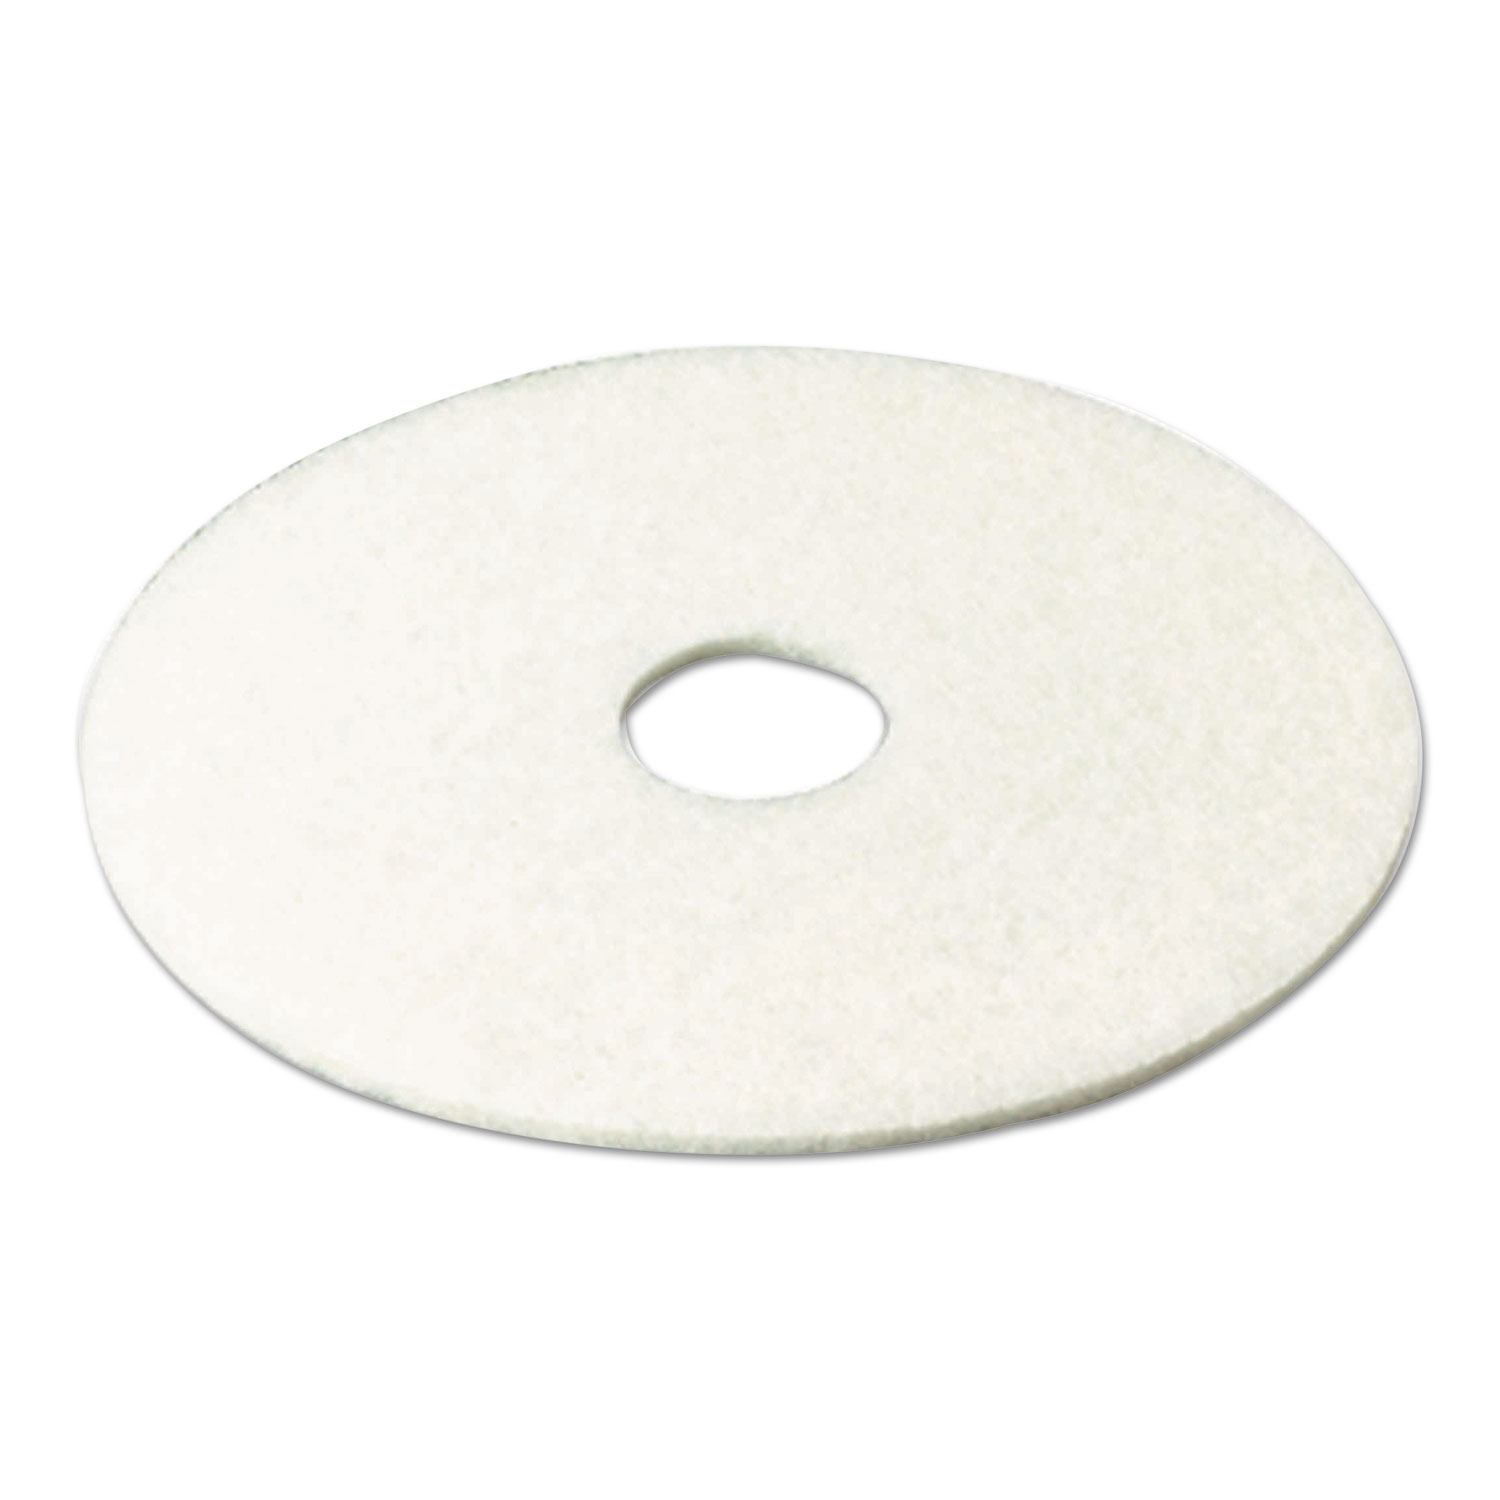 Super Polish Floor Pad 4100, 19 Diameter, White, 5/Carton